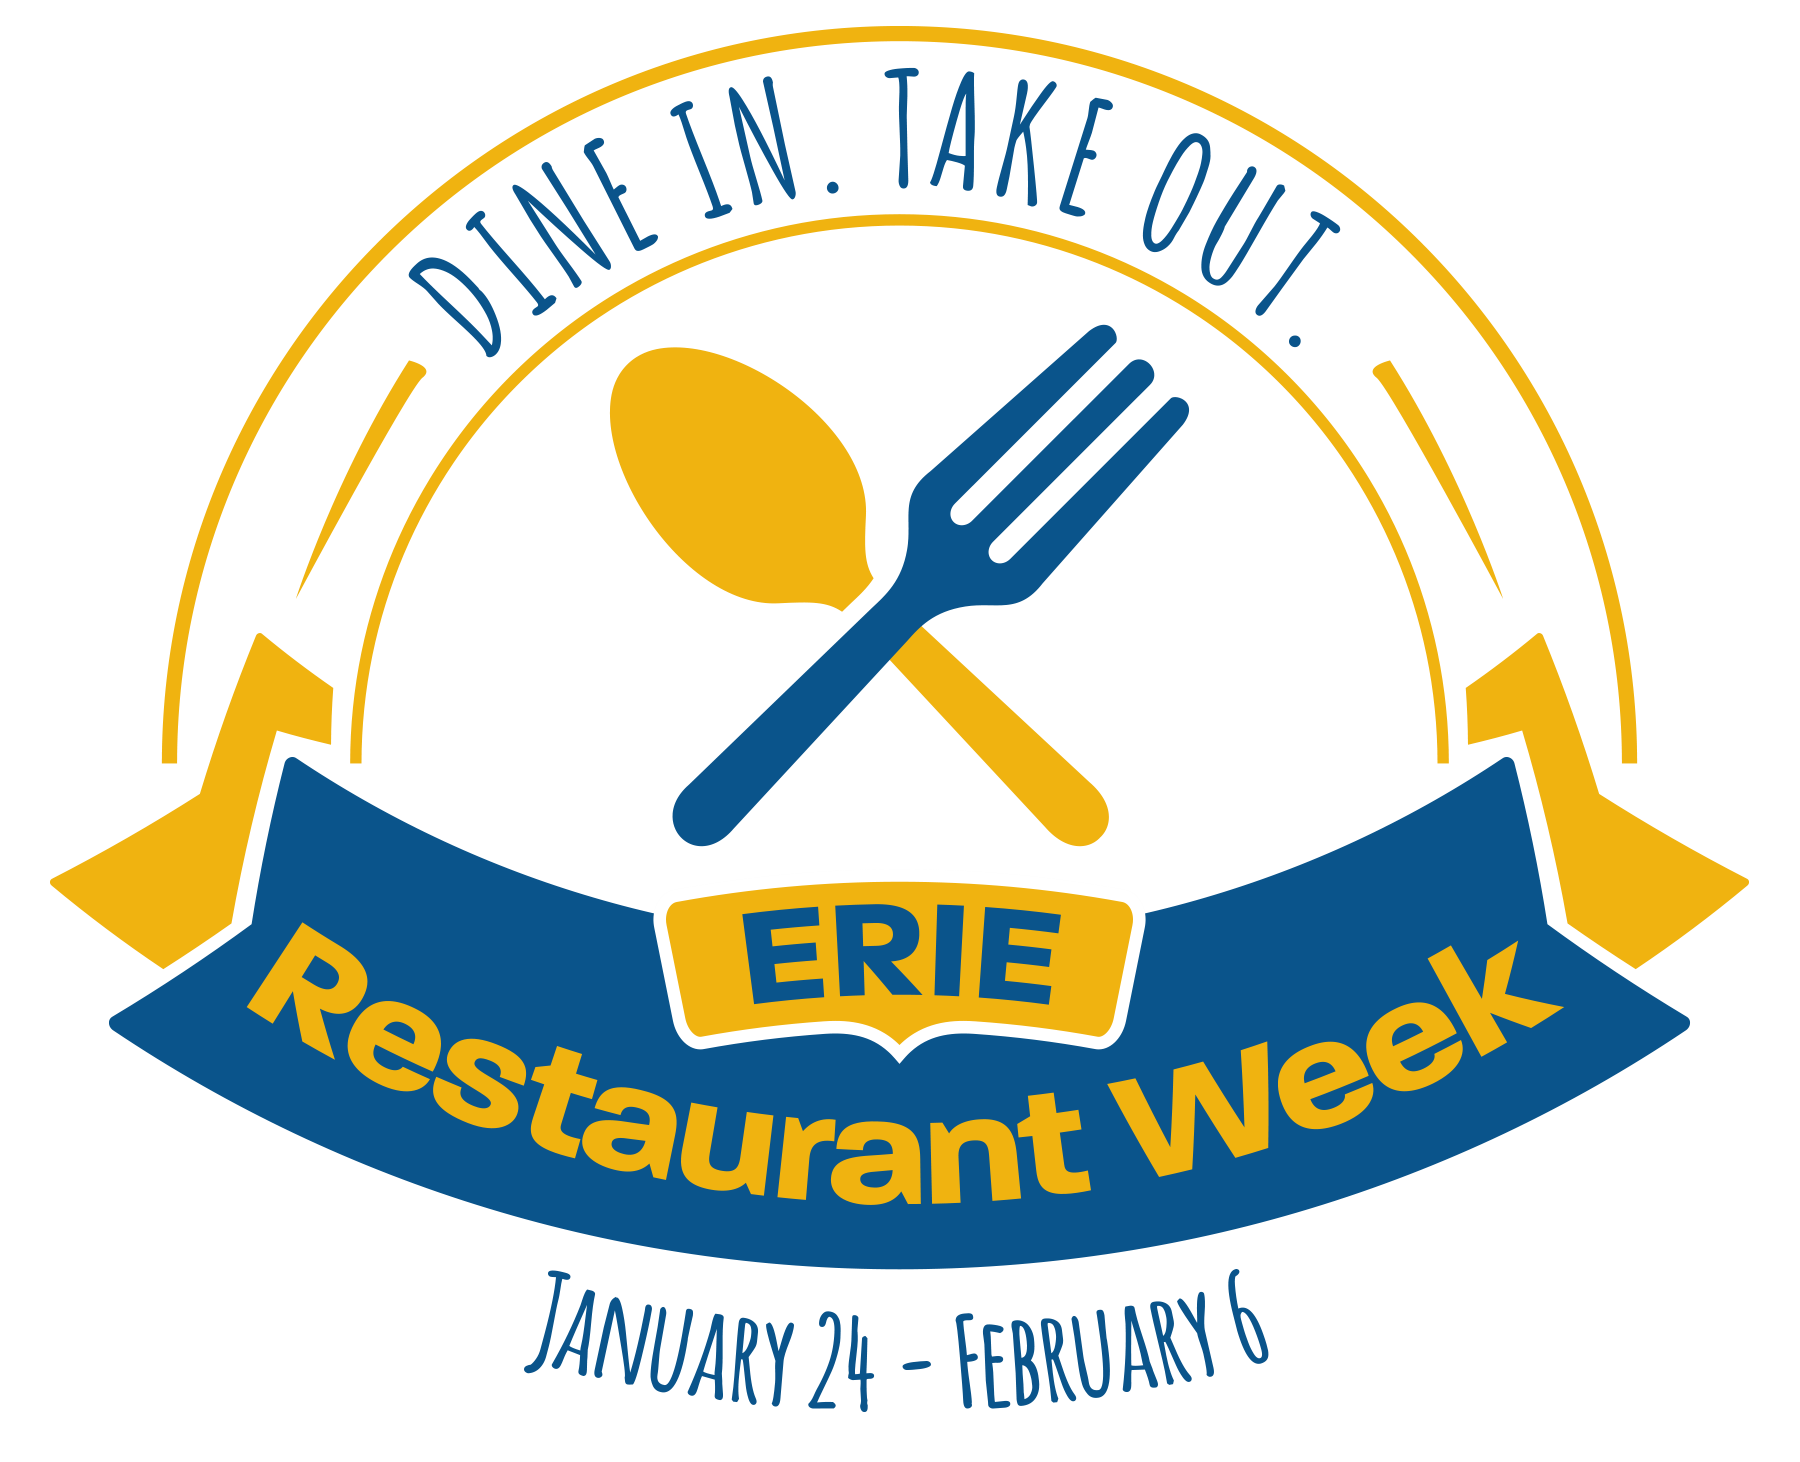 Erie Restaurant Week 2021